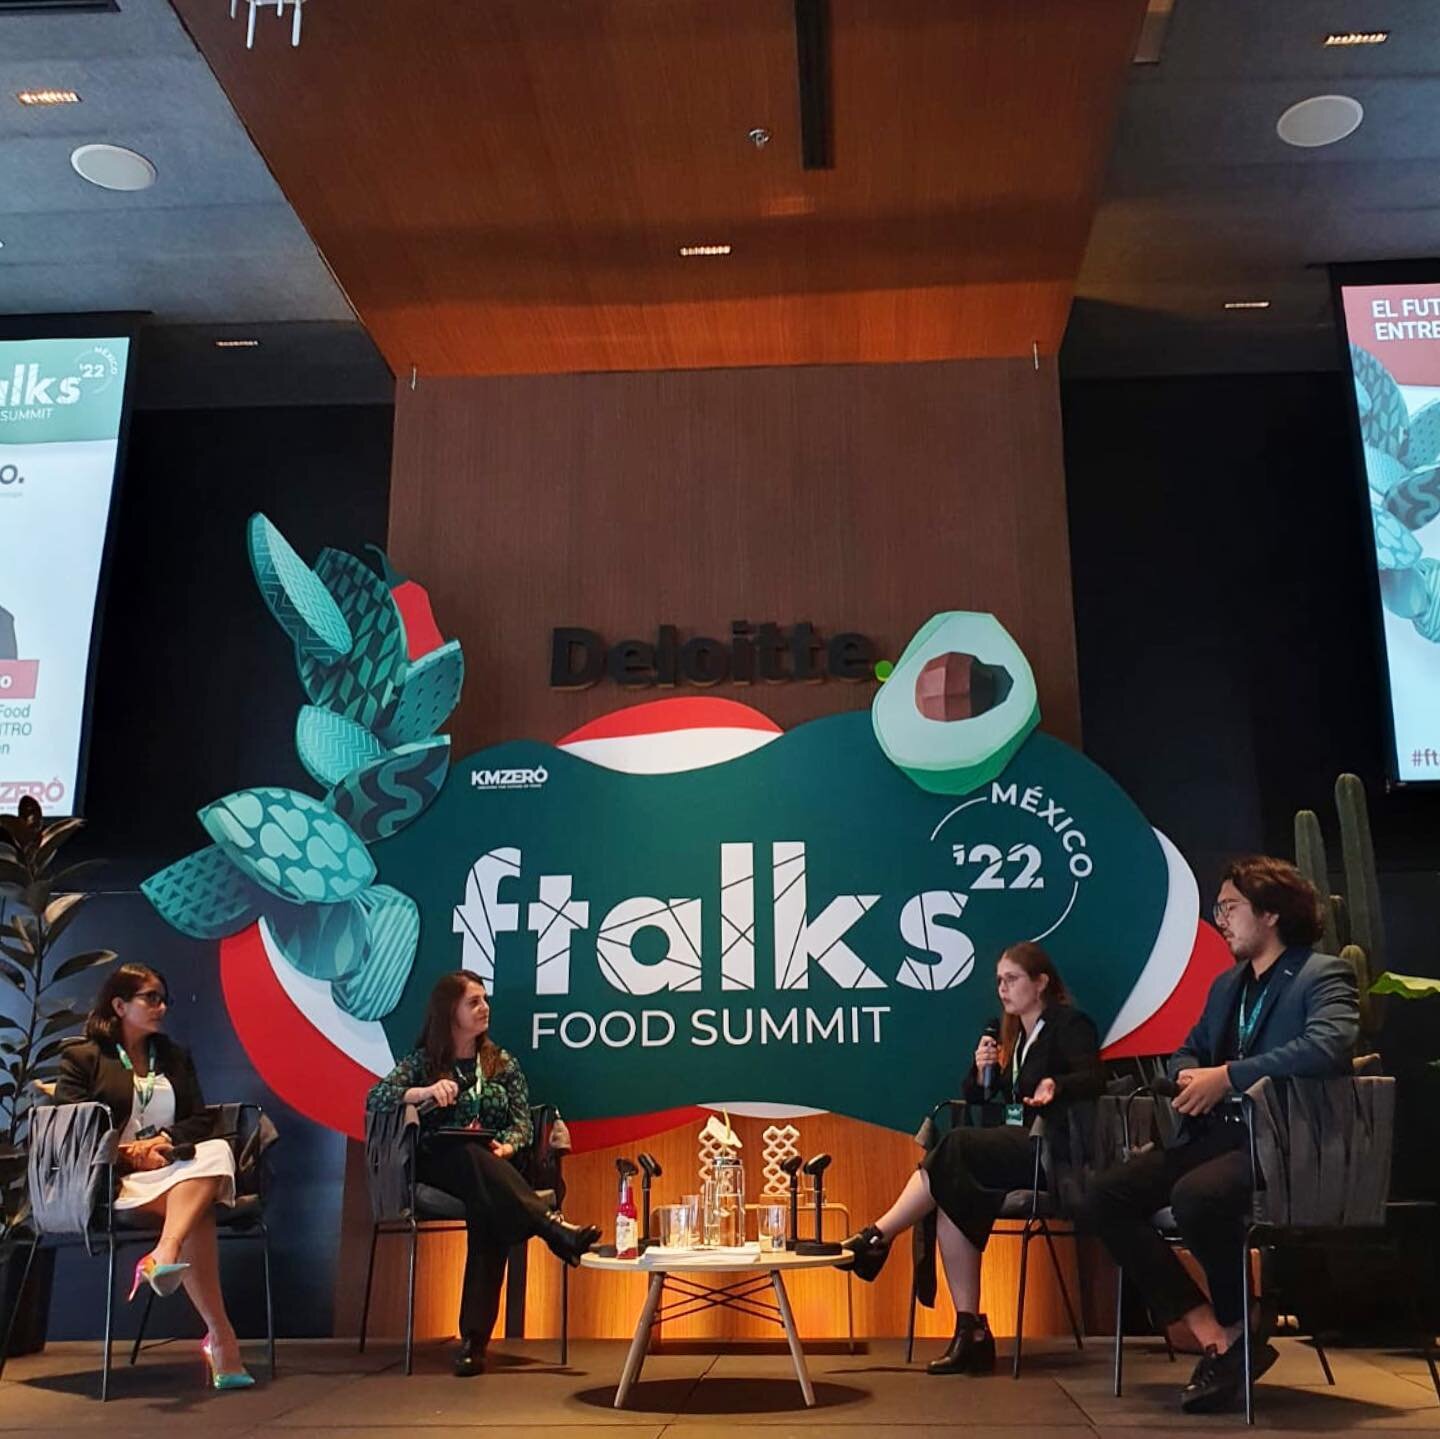 El pasado viernes estuvimos presentes en #ftalks Food Summit organizado por @kmzerohub. En Kraut nos unimos como aliados de este evento con el objetivo de seguir fortaleciendo el ecosistema de la innovaci&oacute;n alimentaria en Latam. 

Tambi&eacute